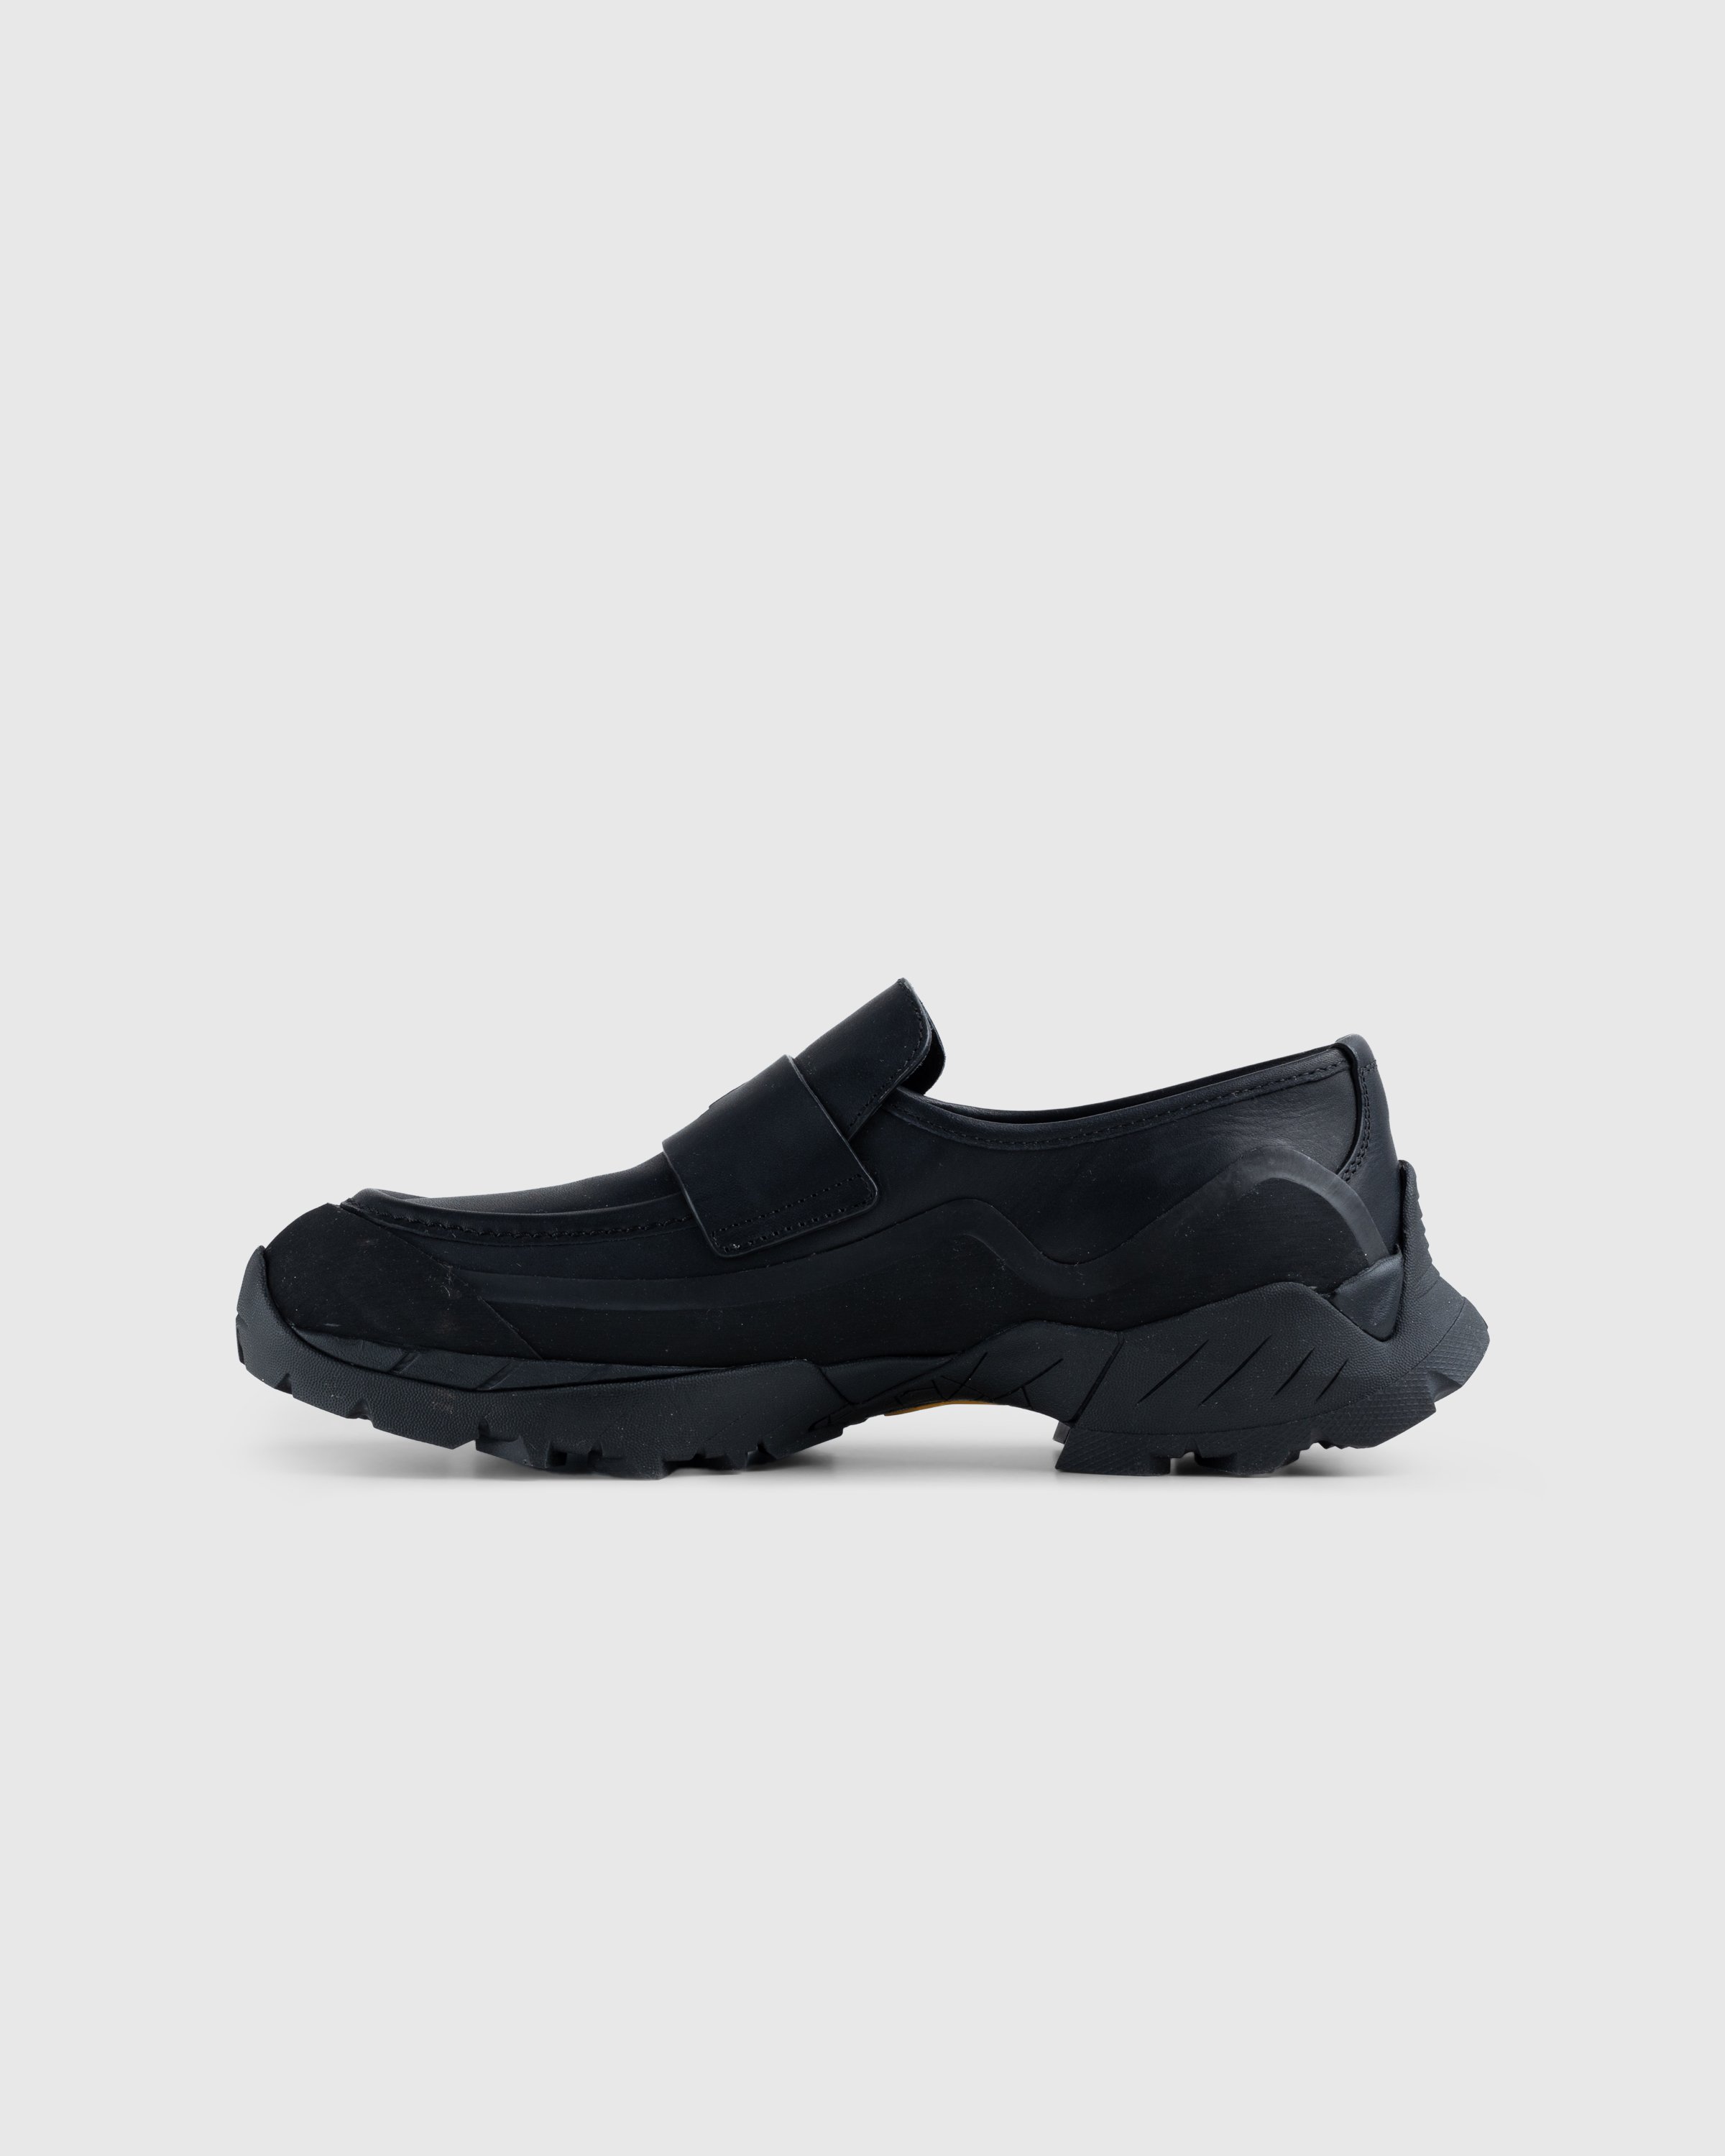 ROA - Leather Loafer Black - Footwear - Black - Image 2